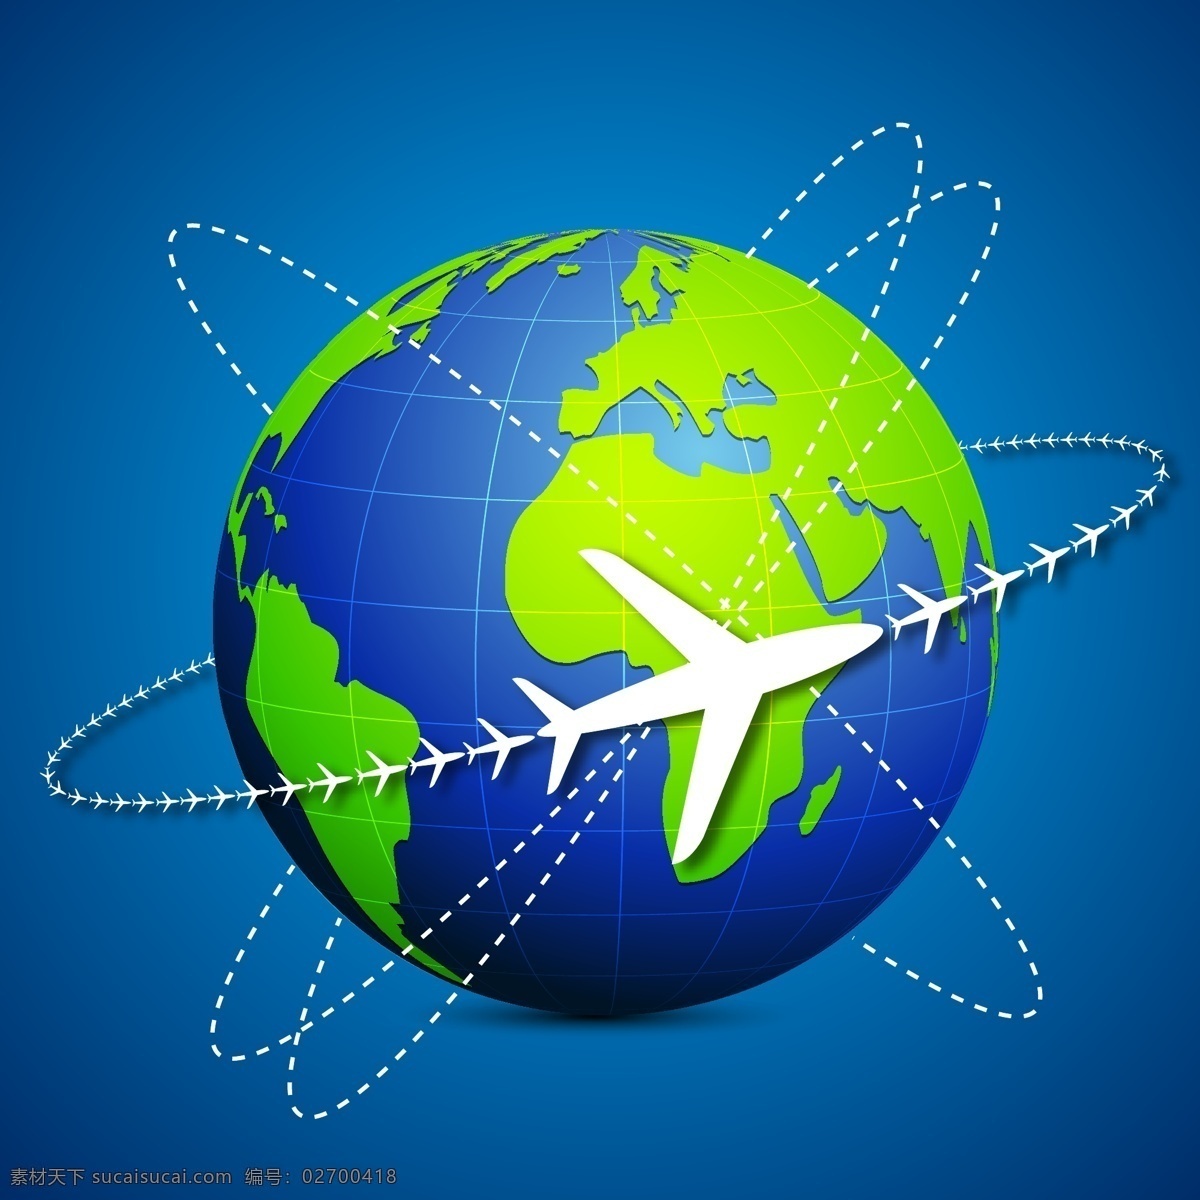 环球 旅行 背景 矢量 地图 飞机 航班 机票 路线 曲线 矢量图 油轮 现代科技